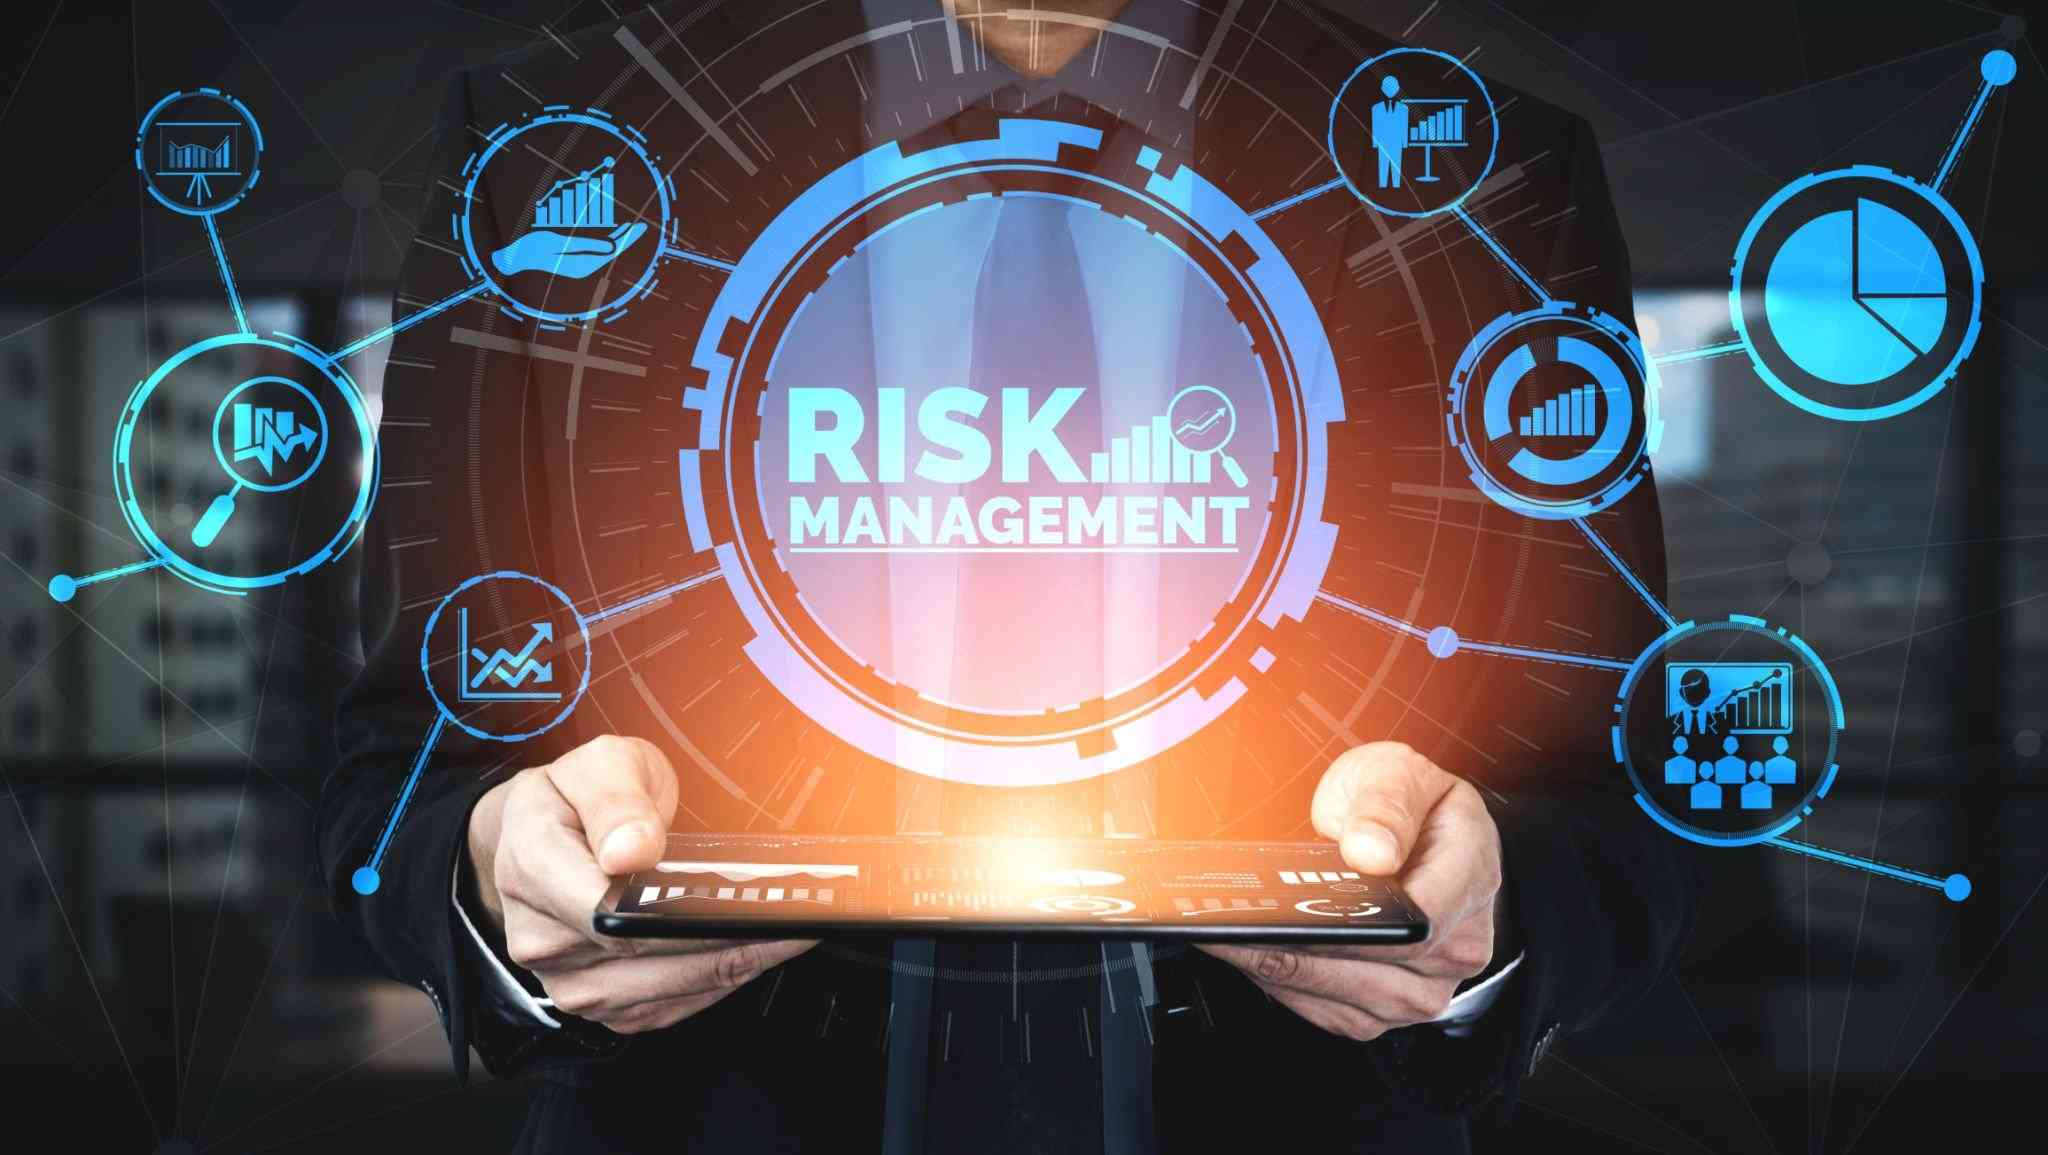 Teknoloji yatırımları ve risklerini analizi